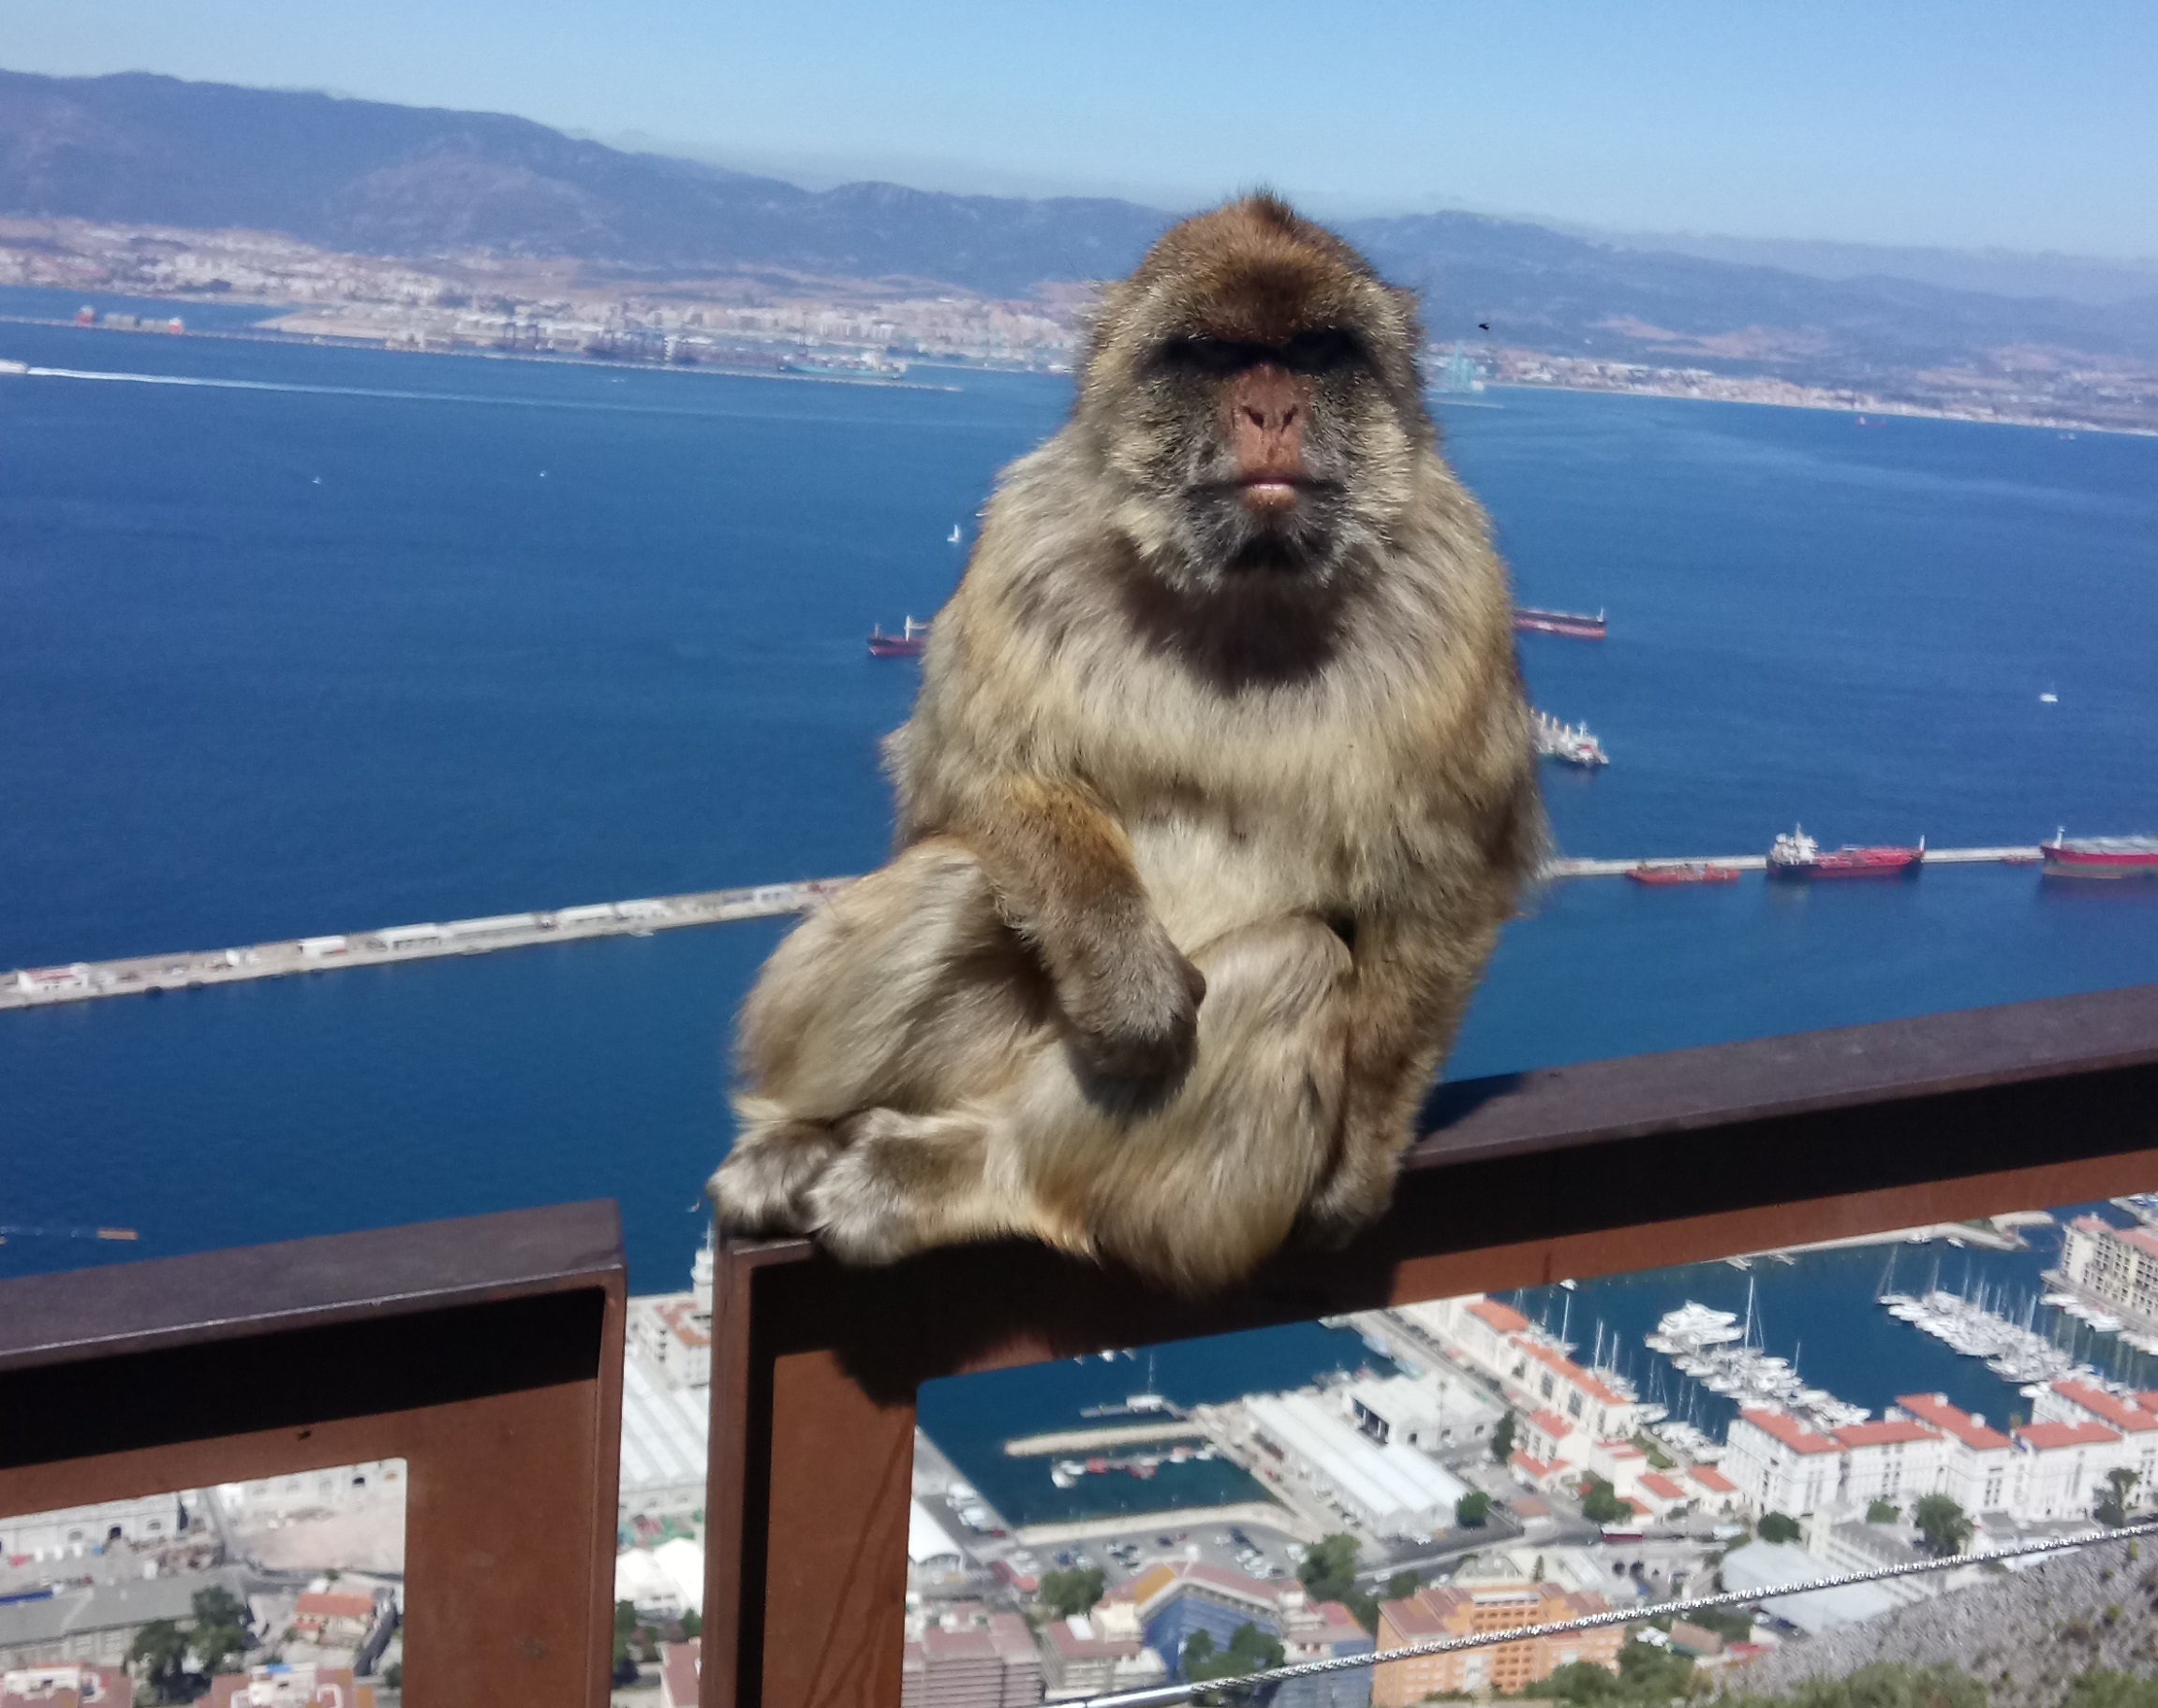 Hvordan får man en autentisk oplevelse af Gibraltar på trods af turistmasserne?